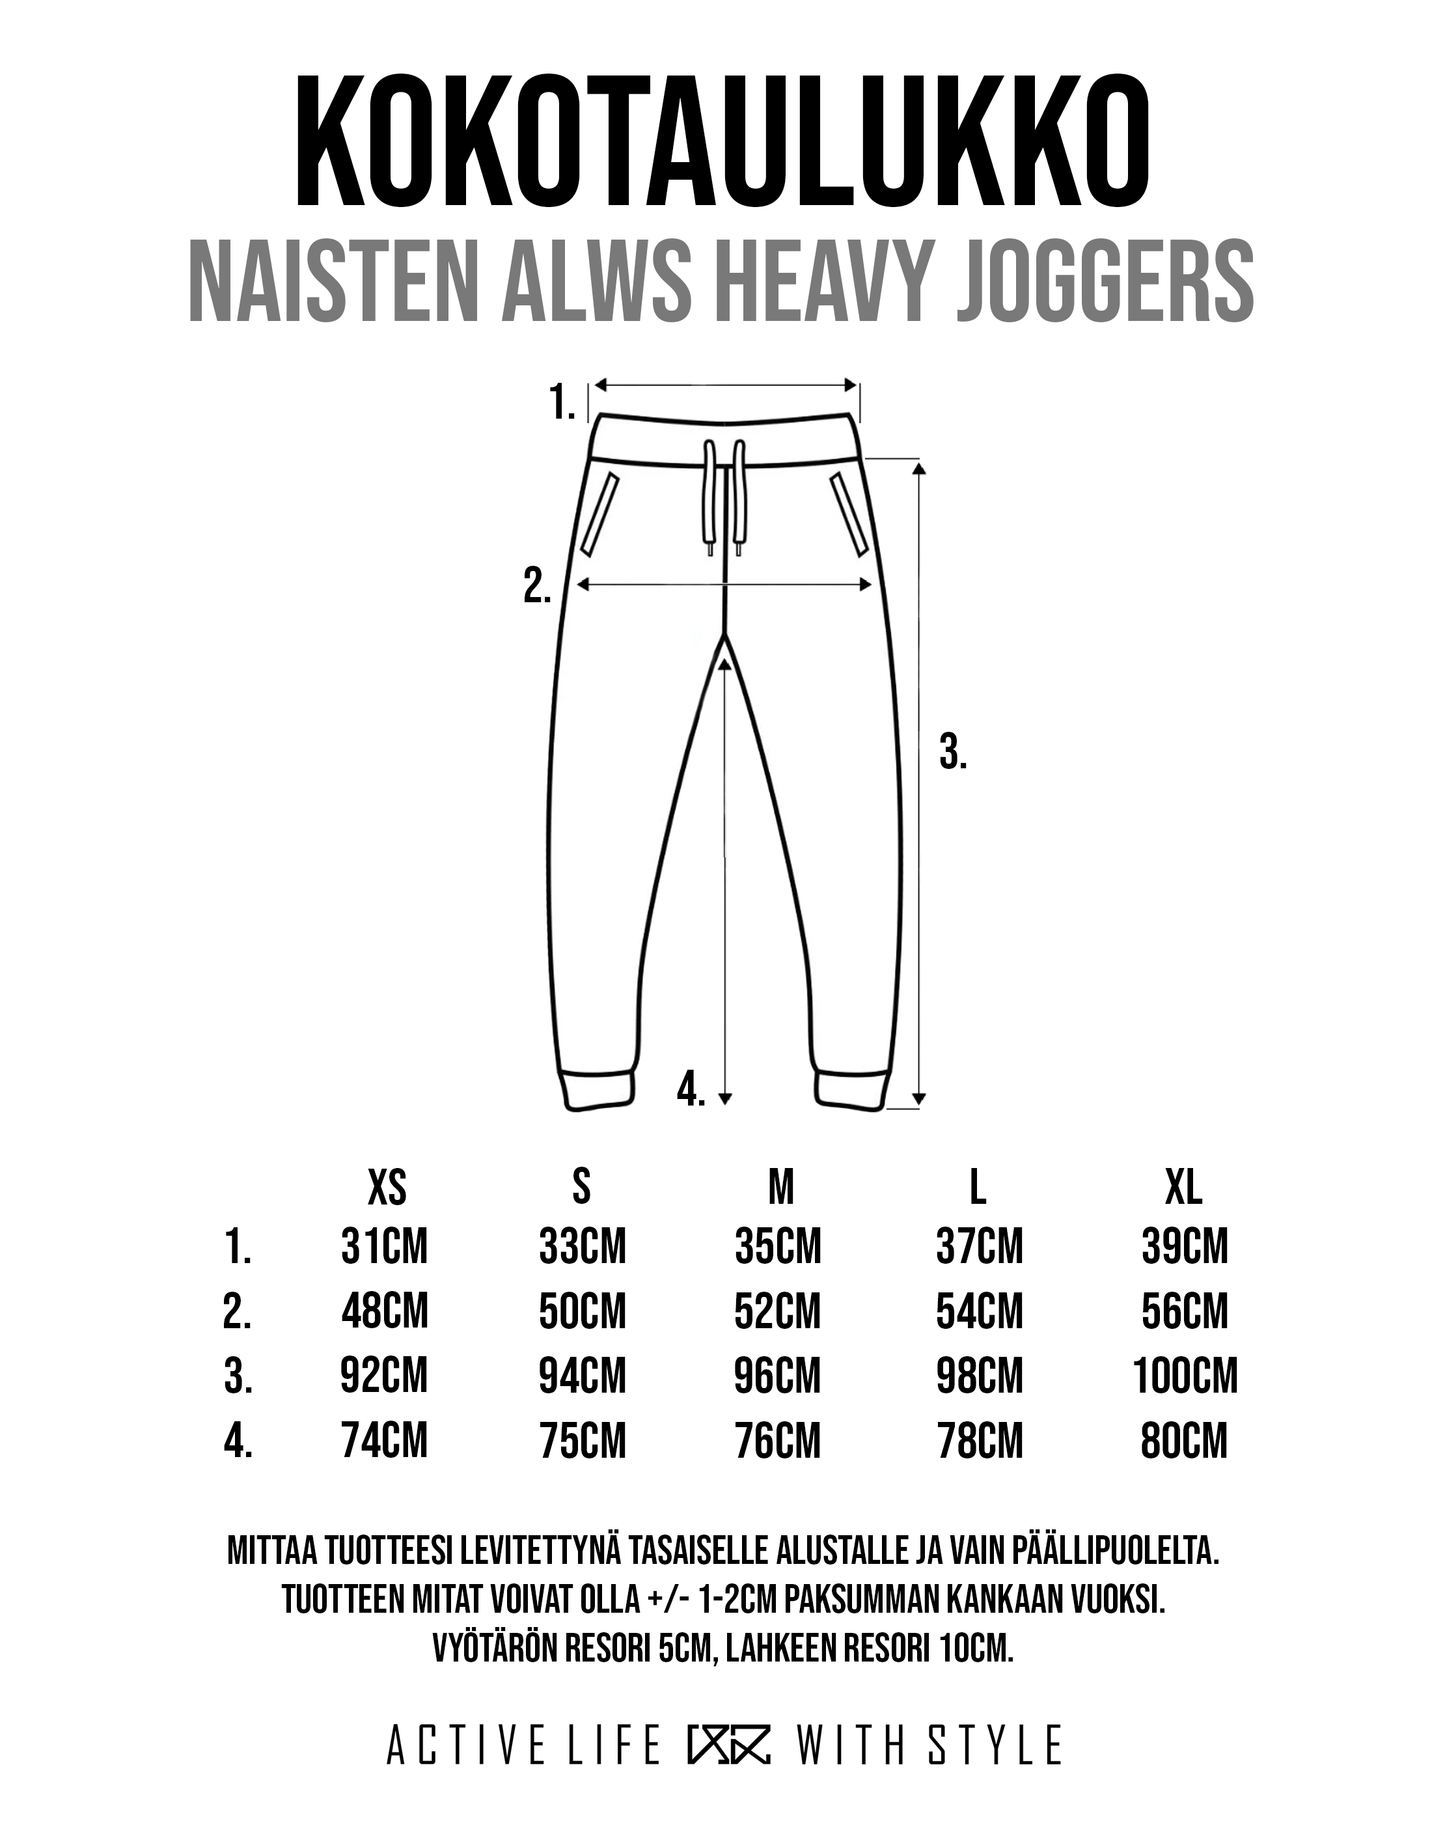 ALWS Heavy Joggers (naiset) - the Original 187